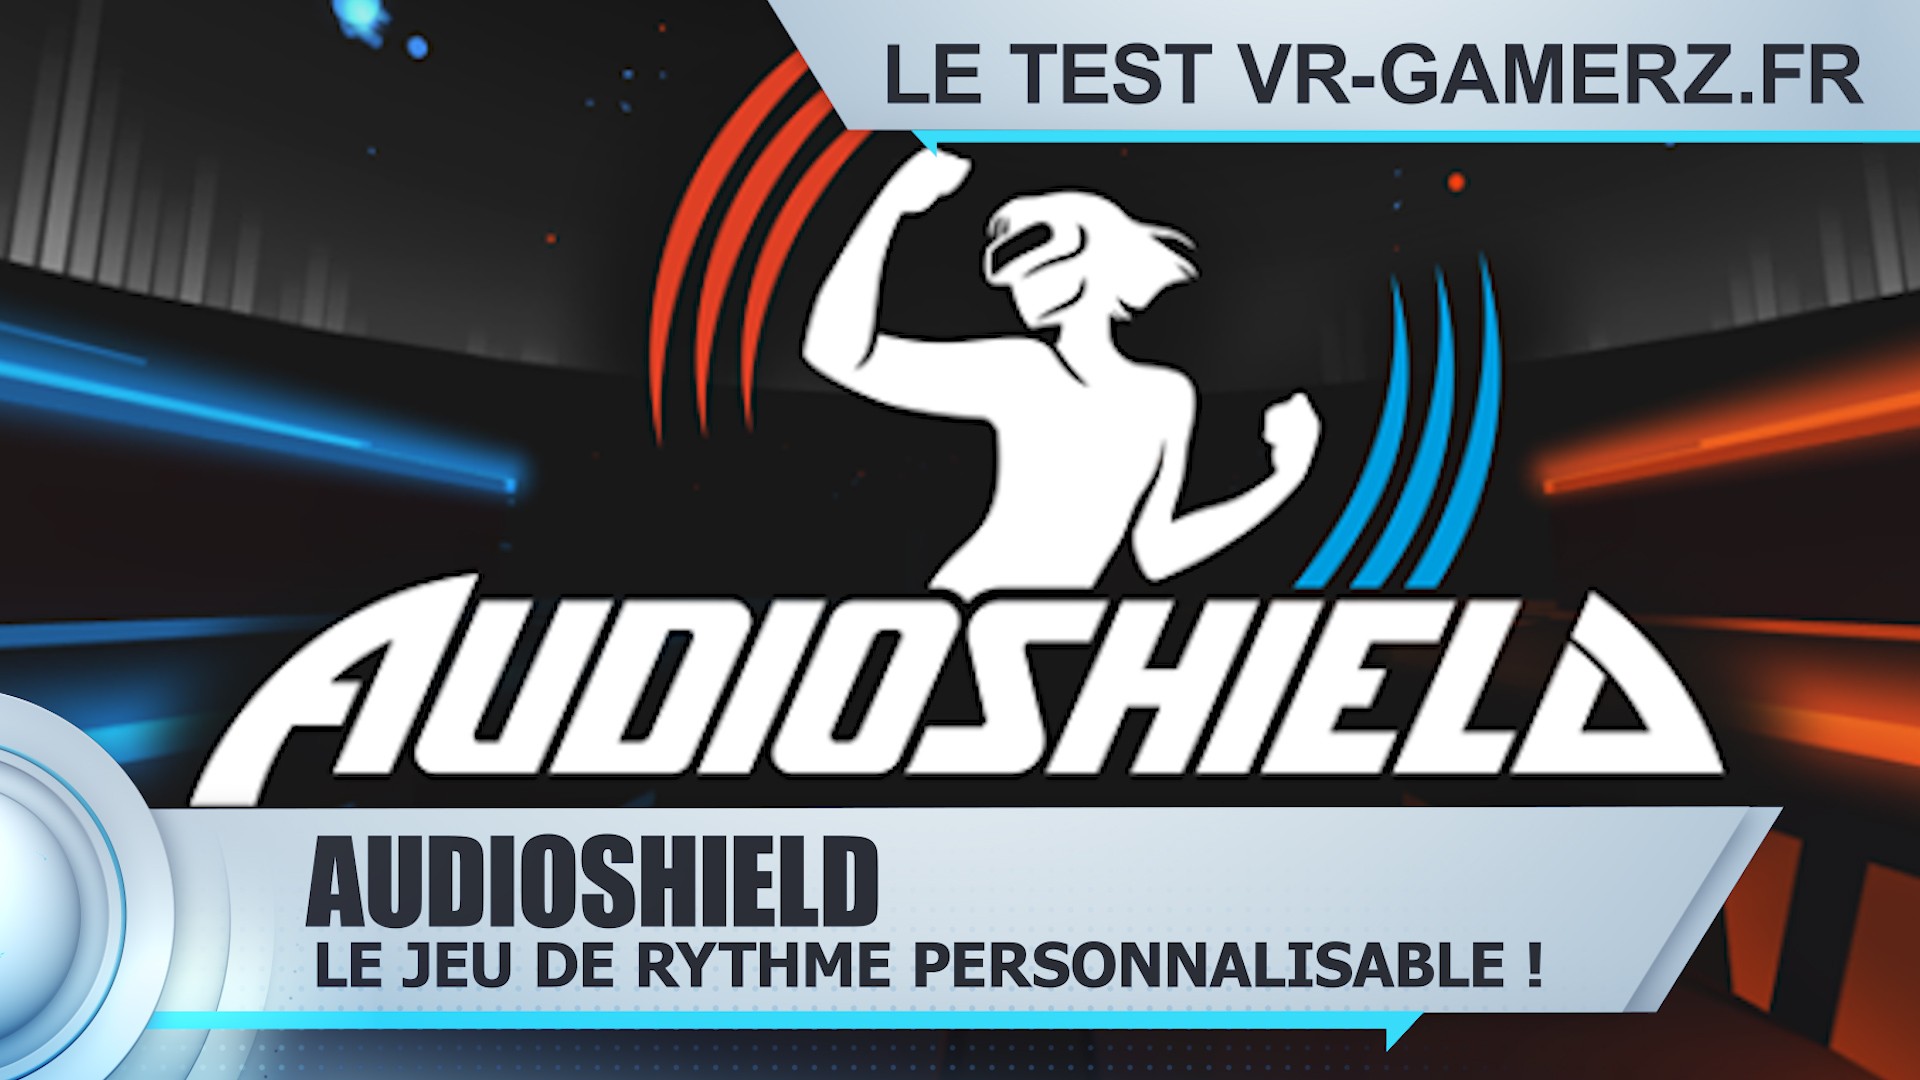 Audioshield Oculus test réalisé VR-gamerz.fr